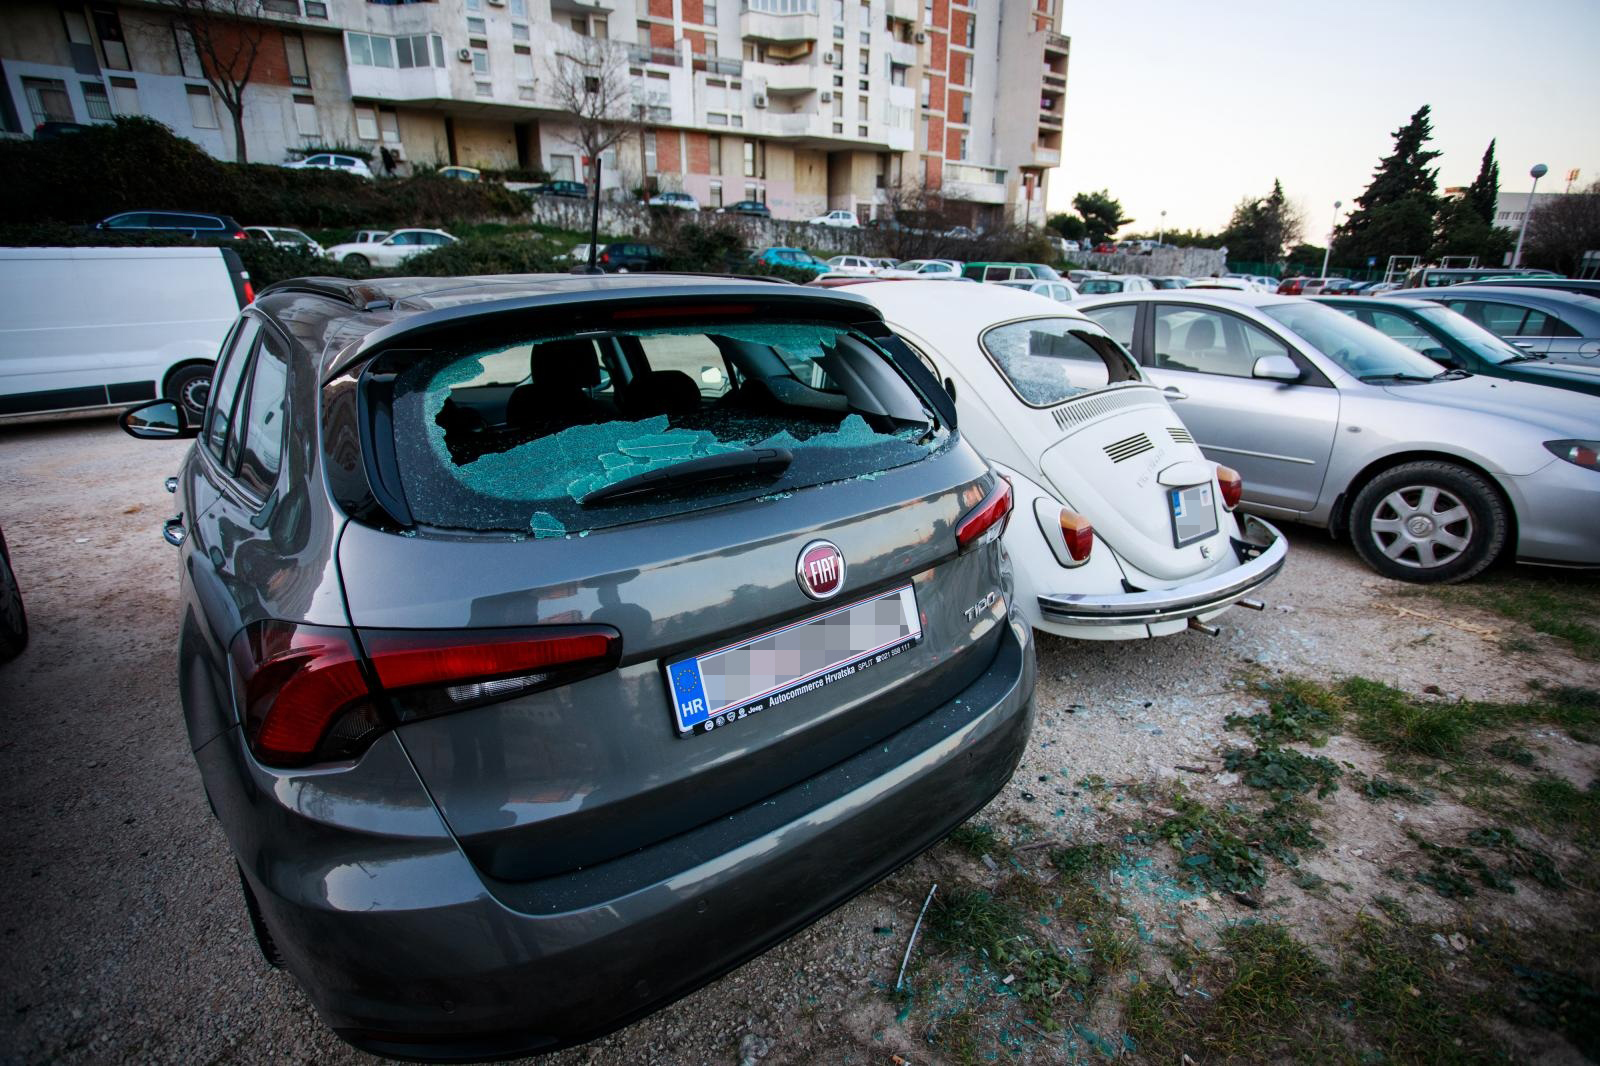 Pijani muškarac u Splitu je u utorak rano jutro oštetio 21 parkirano vozilo, kojima je razbio uglavnom stakla, doznaje se od splitske policije.